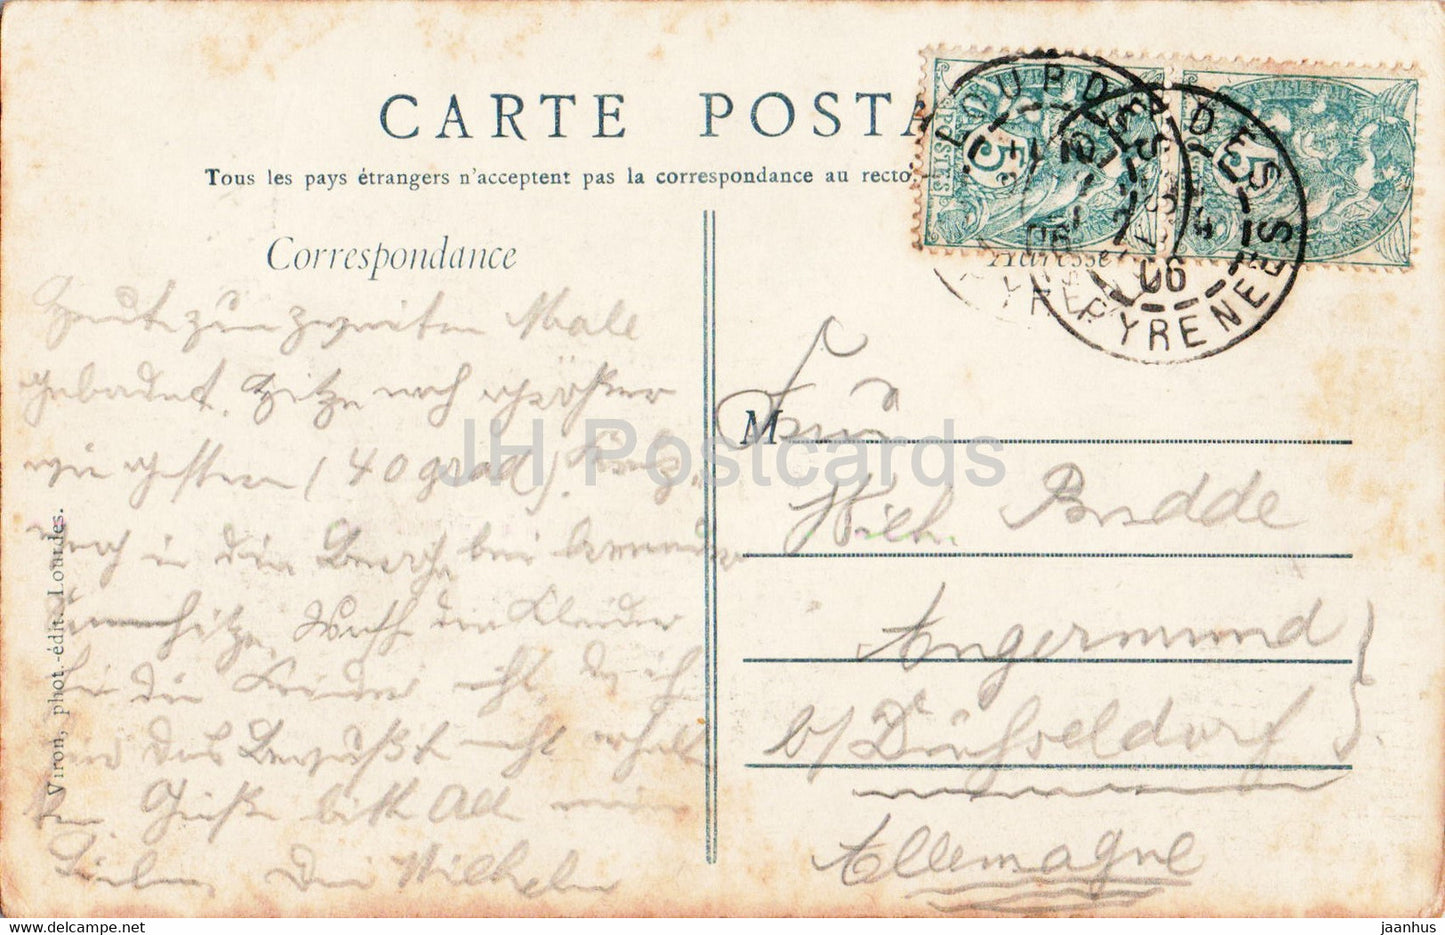 Basilique Notre Dame de Lourdes - La Nuit - cathedrale - 26 - old postcard - 1906 - France - used